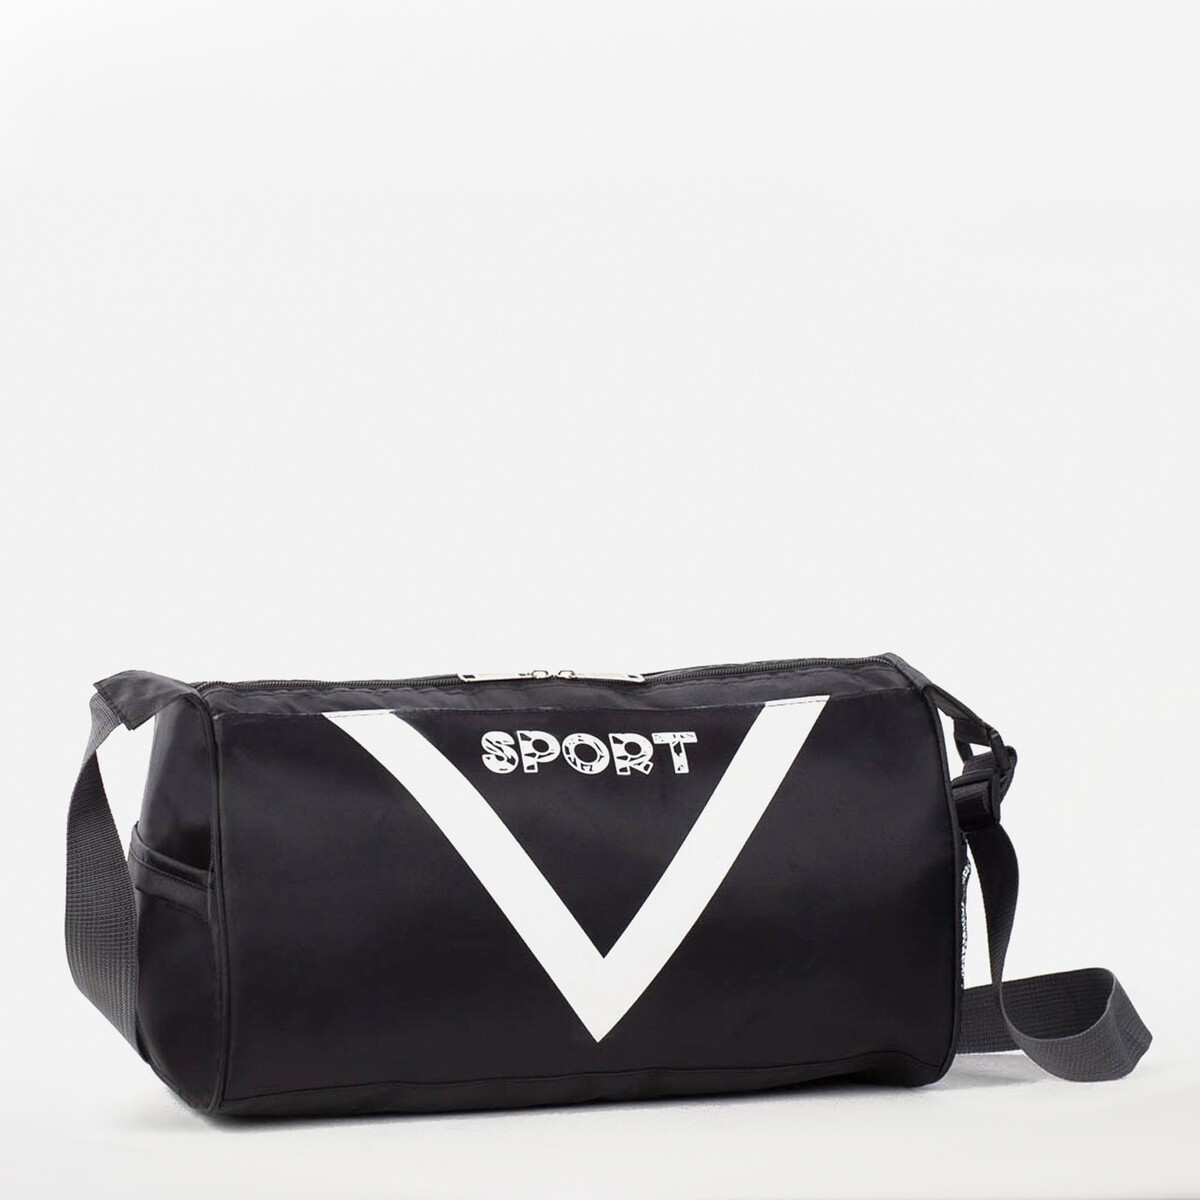 Сумка спортивная, отдел на молнии, боковая сетка, длинный ремень, цвет черный сумка спортивная отдел на молнии боковая сетка длинный ремень